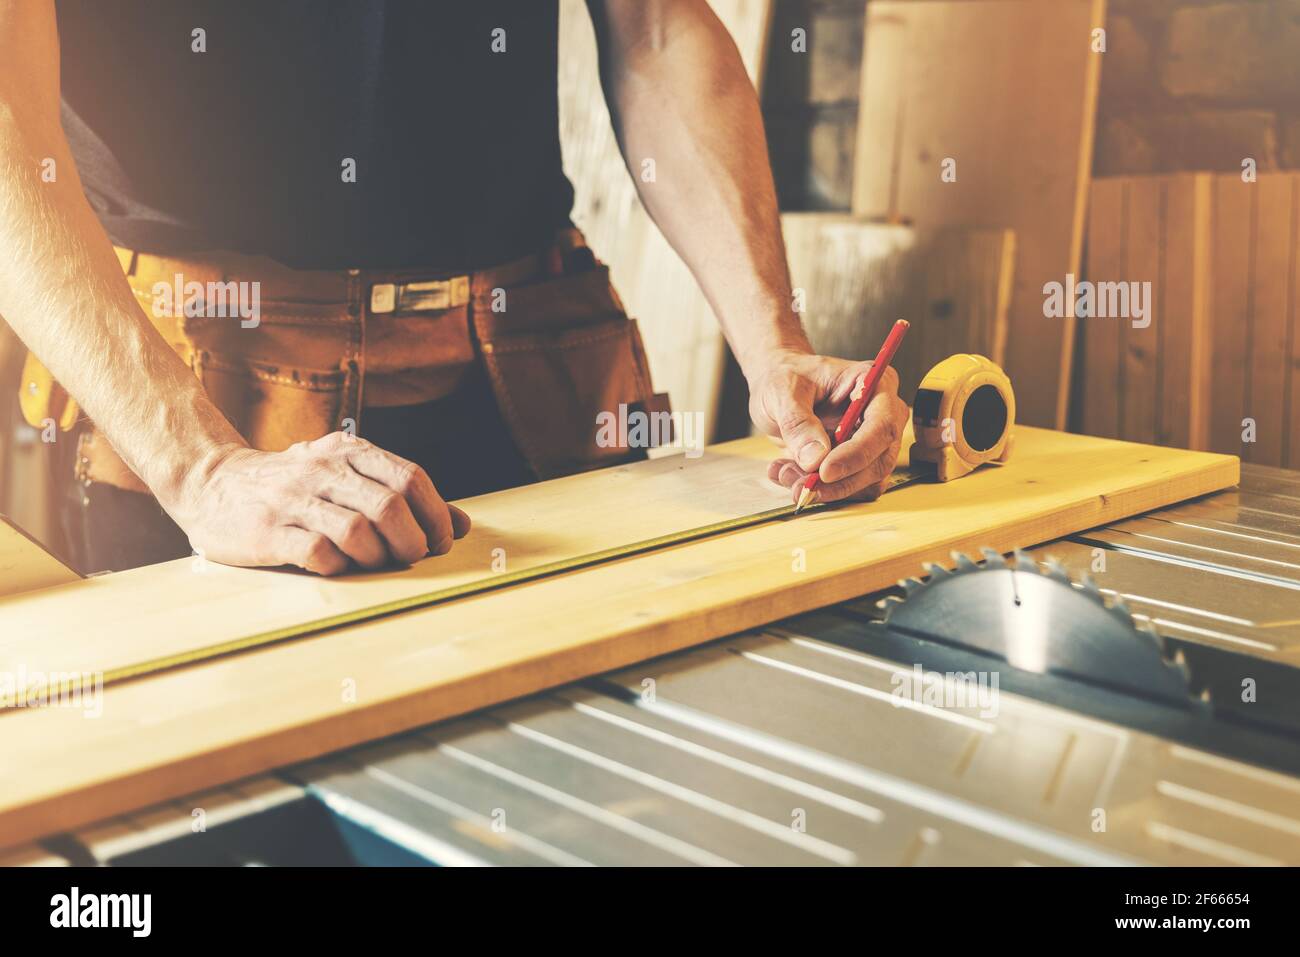 officina di lavorazione del legno - falegname misura e contrassegna la tavola di legno per il taglio Foto Stock